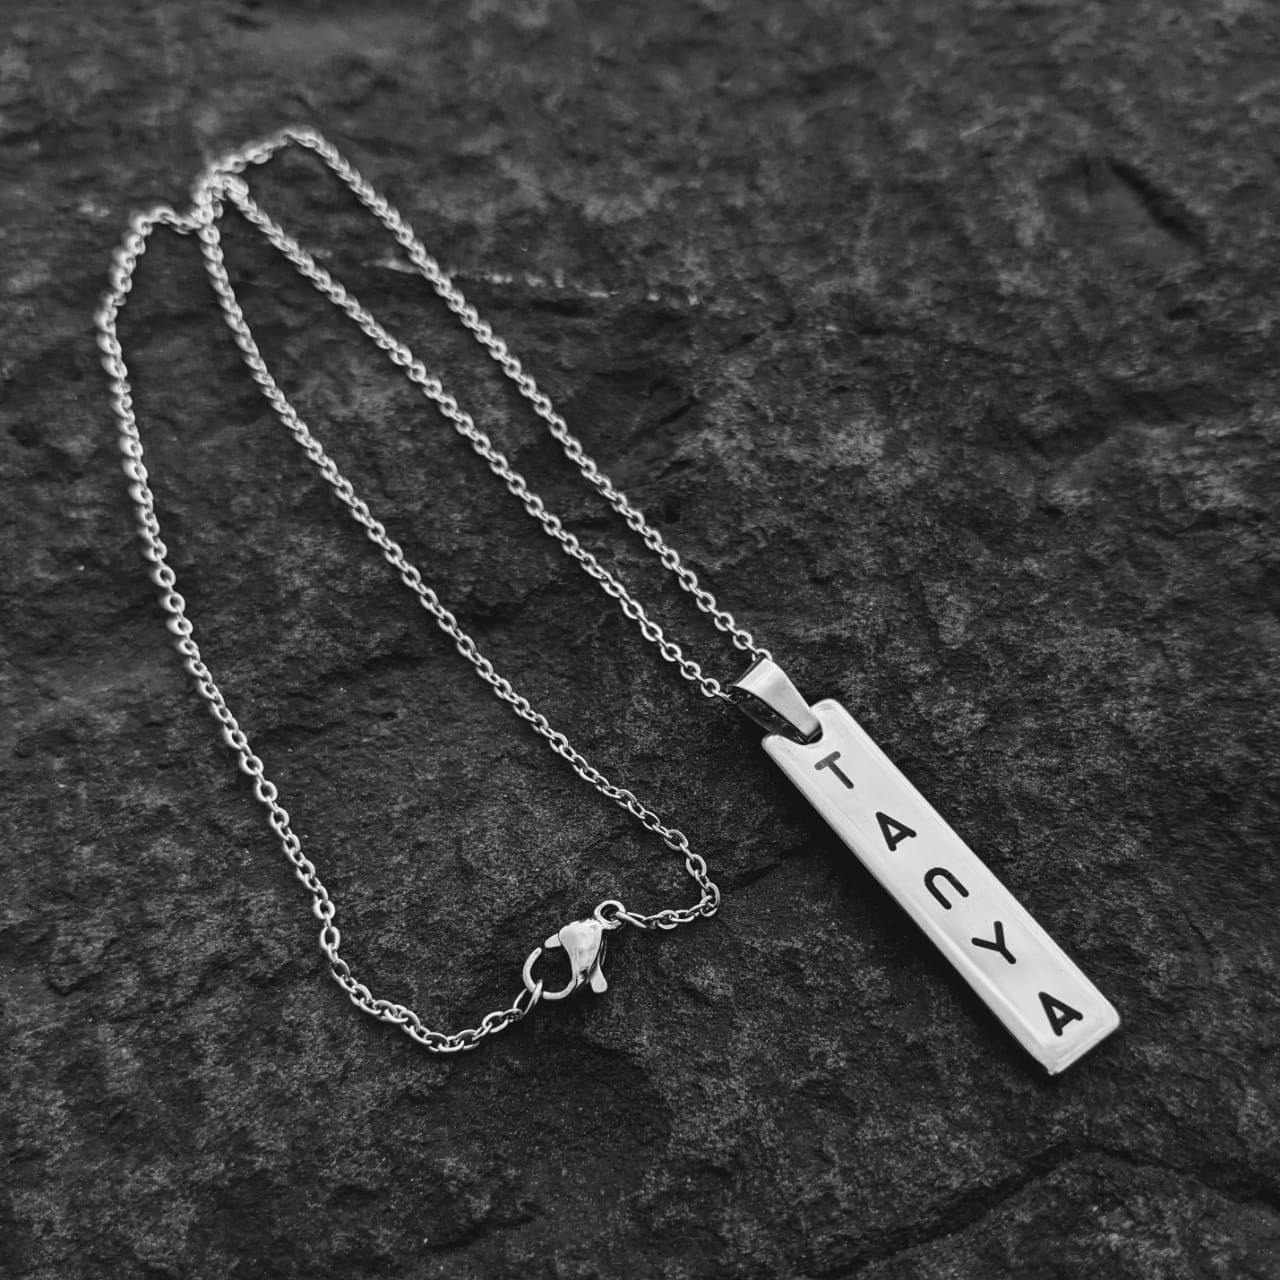 Buy Sterling Silver Engraved Hebrew Bar Necklace | Israel-Catalog.com